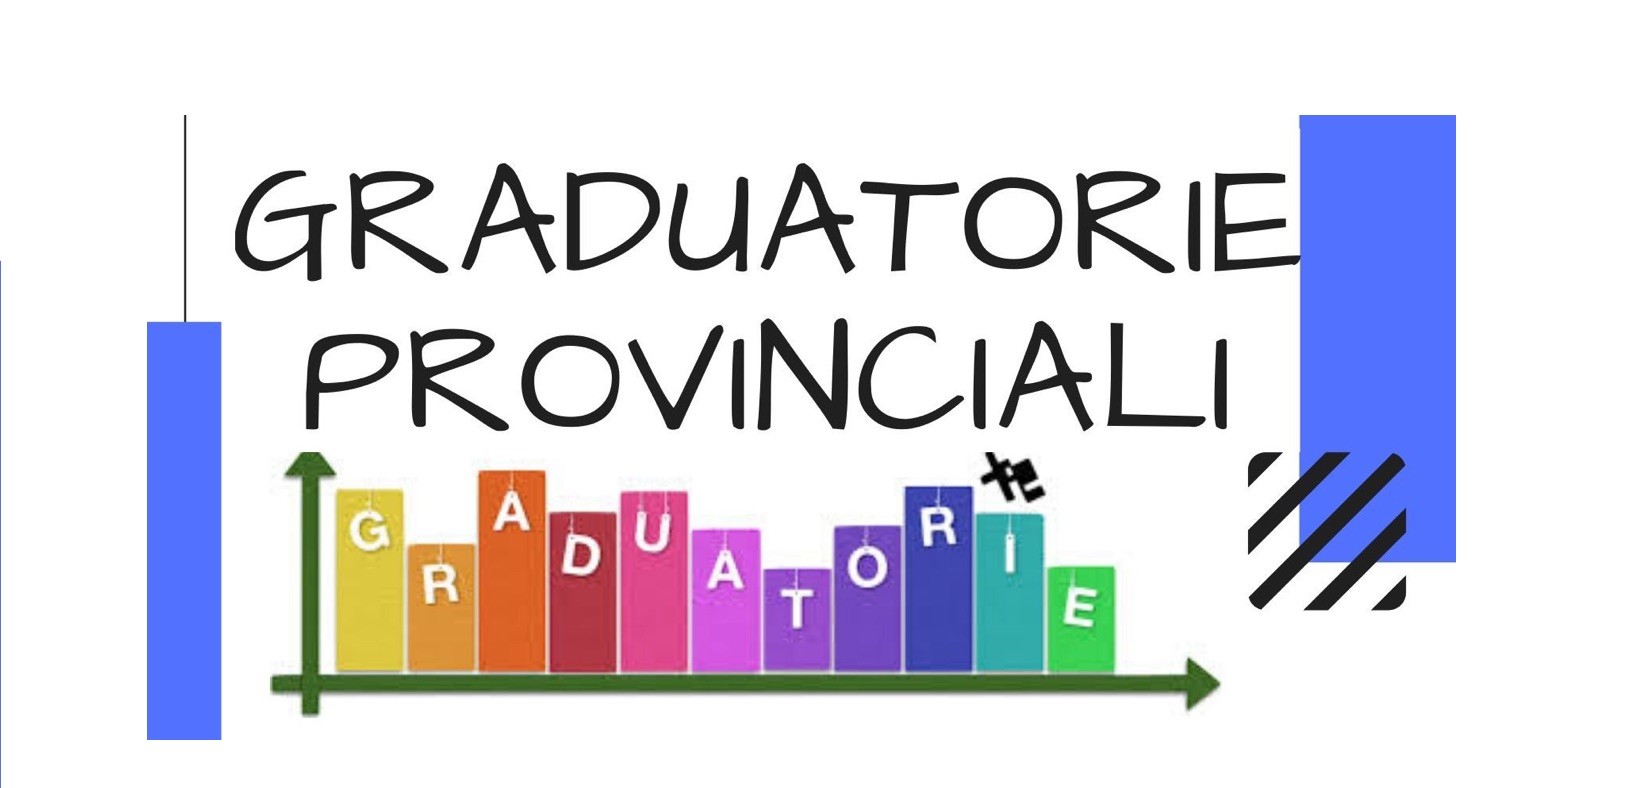 Graduatorie Provinciali